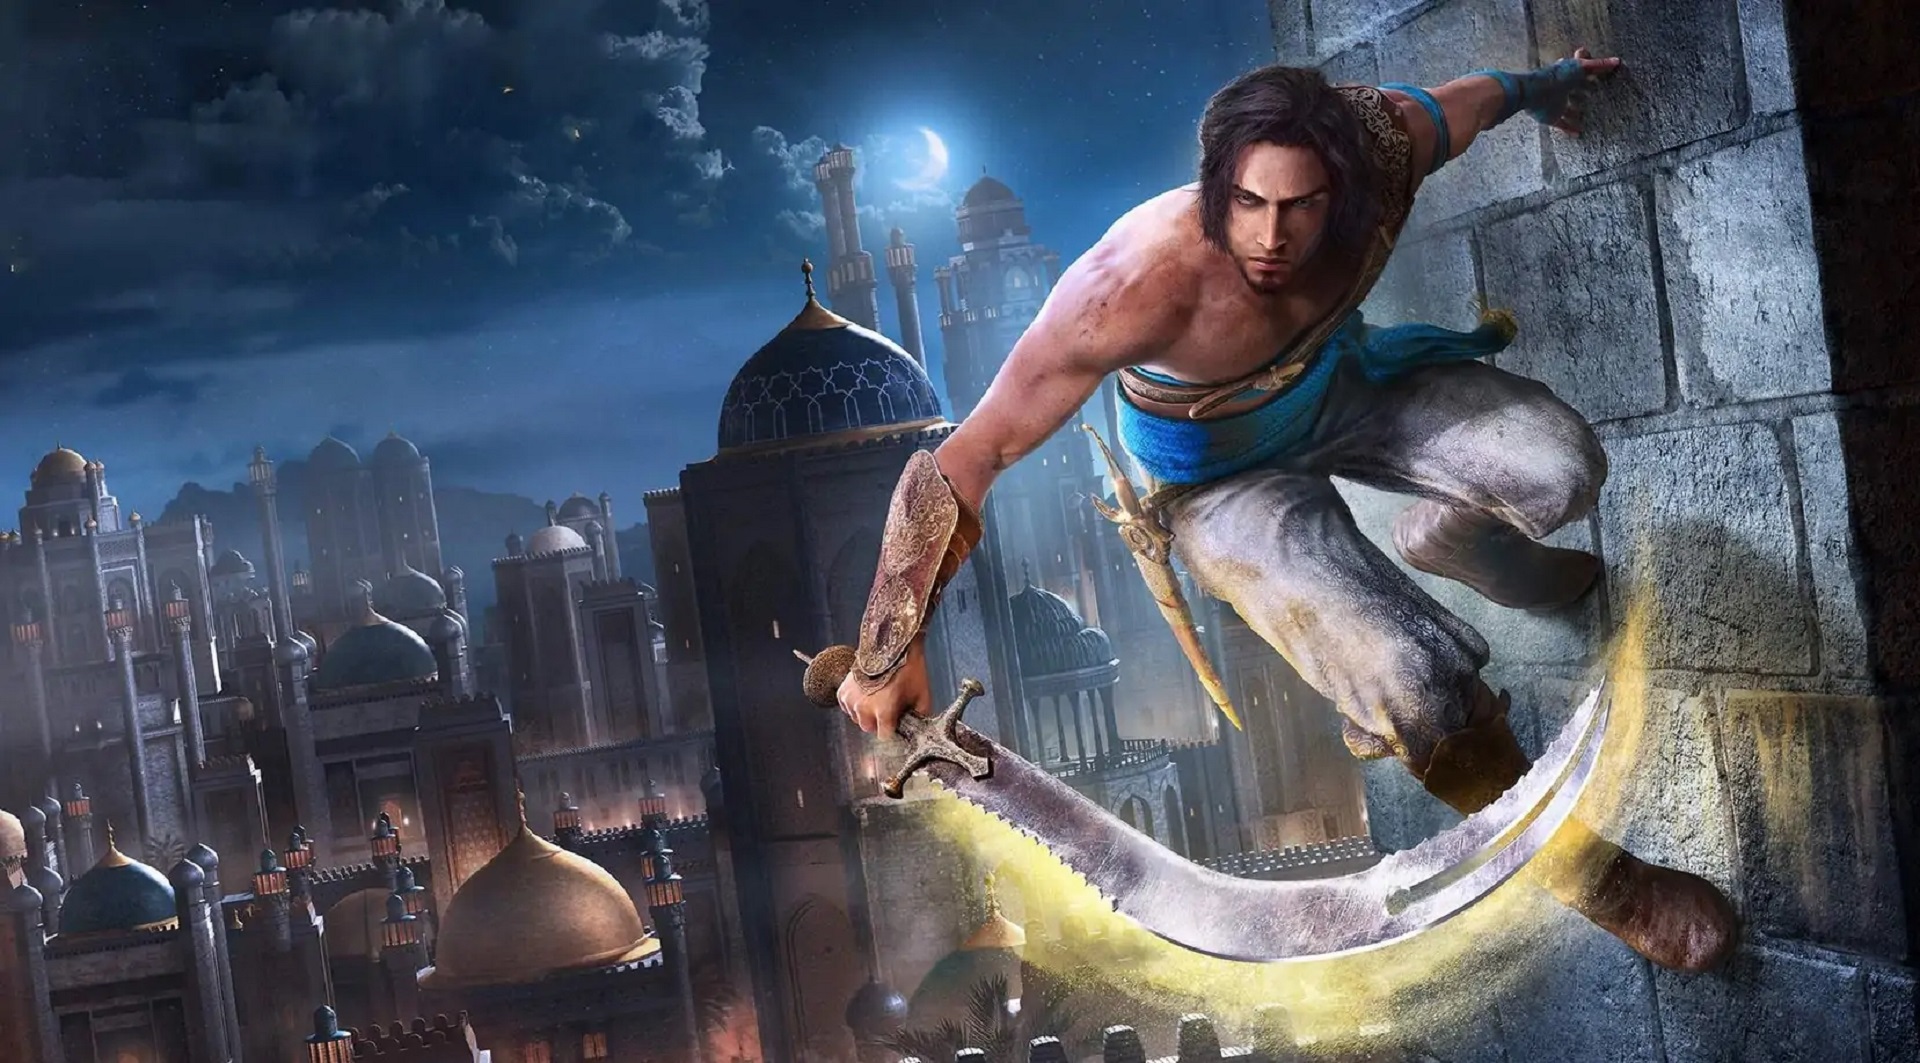 Prince of Persia: Le Sabbie del Tempo Remake